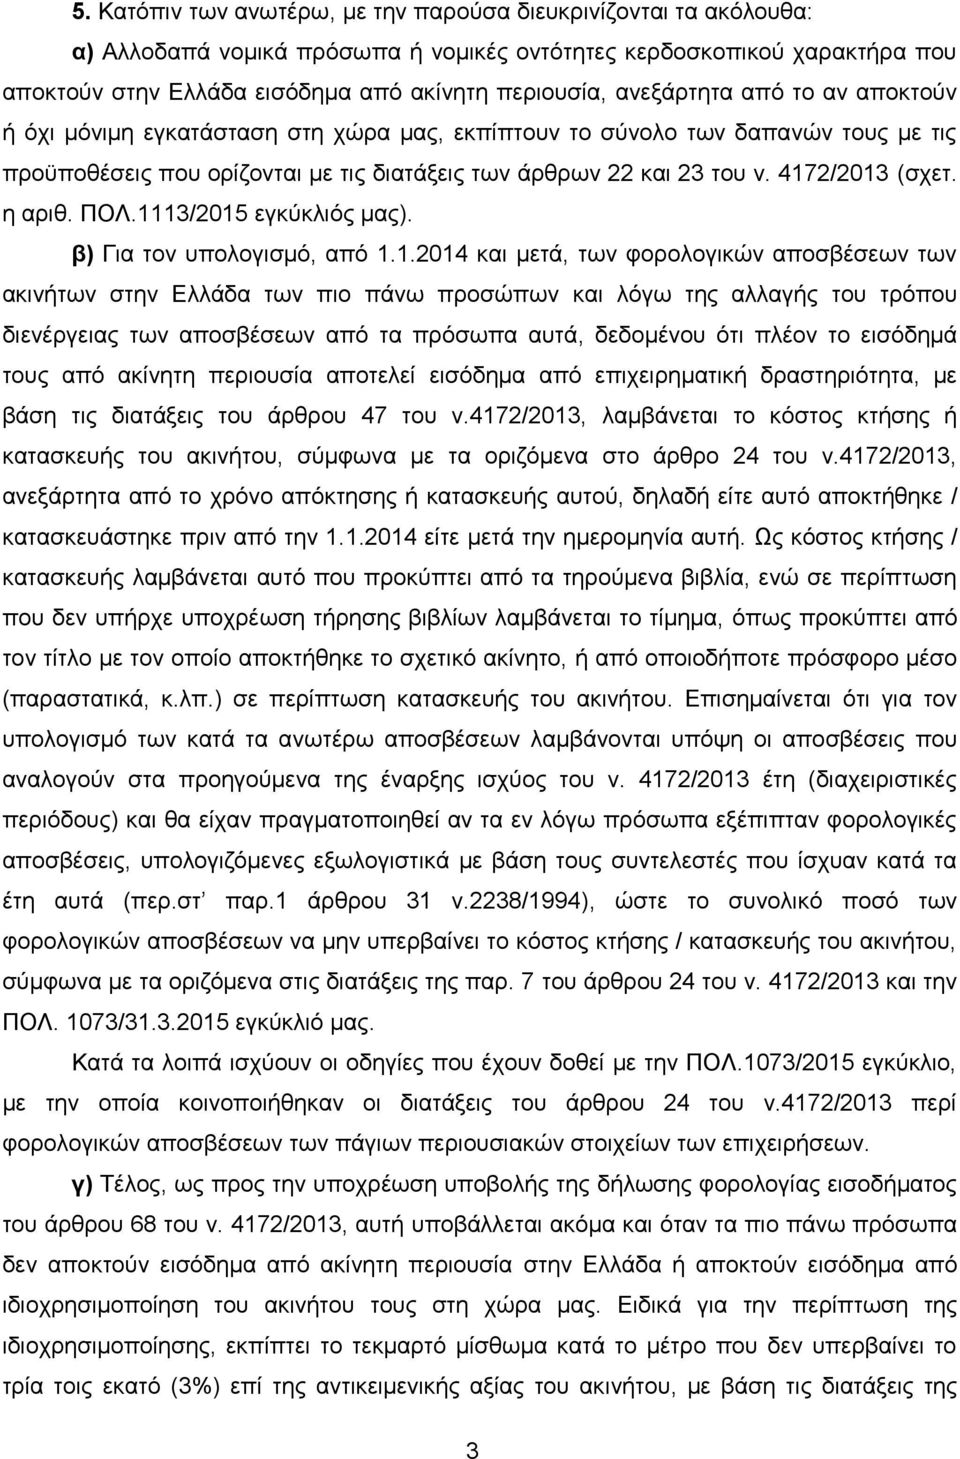 4172/2013 (σχετ. η αριθ. ΠΟΛ.1113/2015 εγκύκλιός μας). β) Για τον υπολογισμό, από 1.1.2014 και μετά, των φορολογικών αποσβέσεων των ακινήτων στην Ελλάδα των πιο πάνω προσώπων και λόγω της αλλαγής του